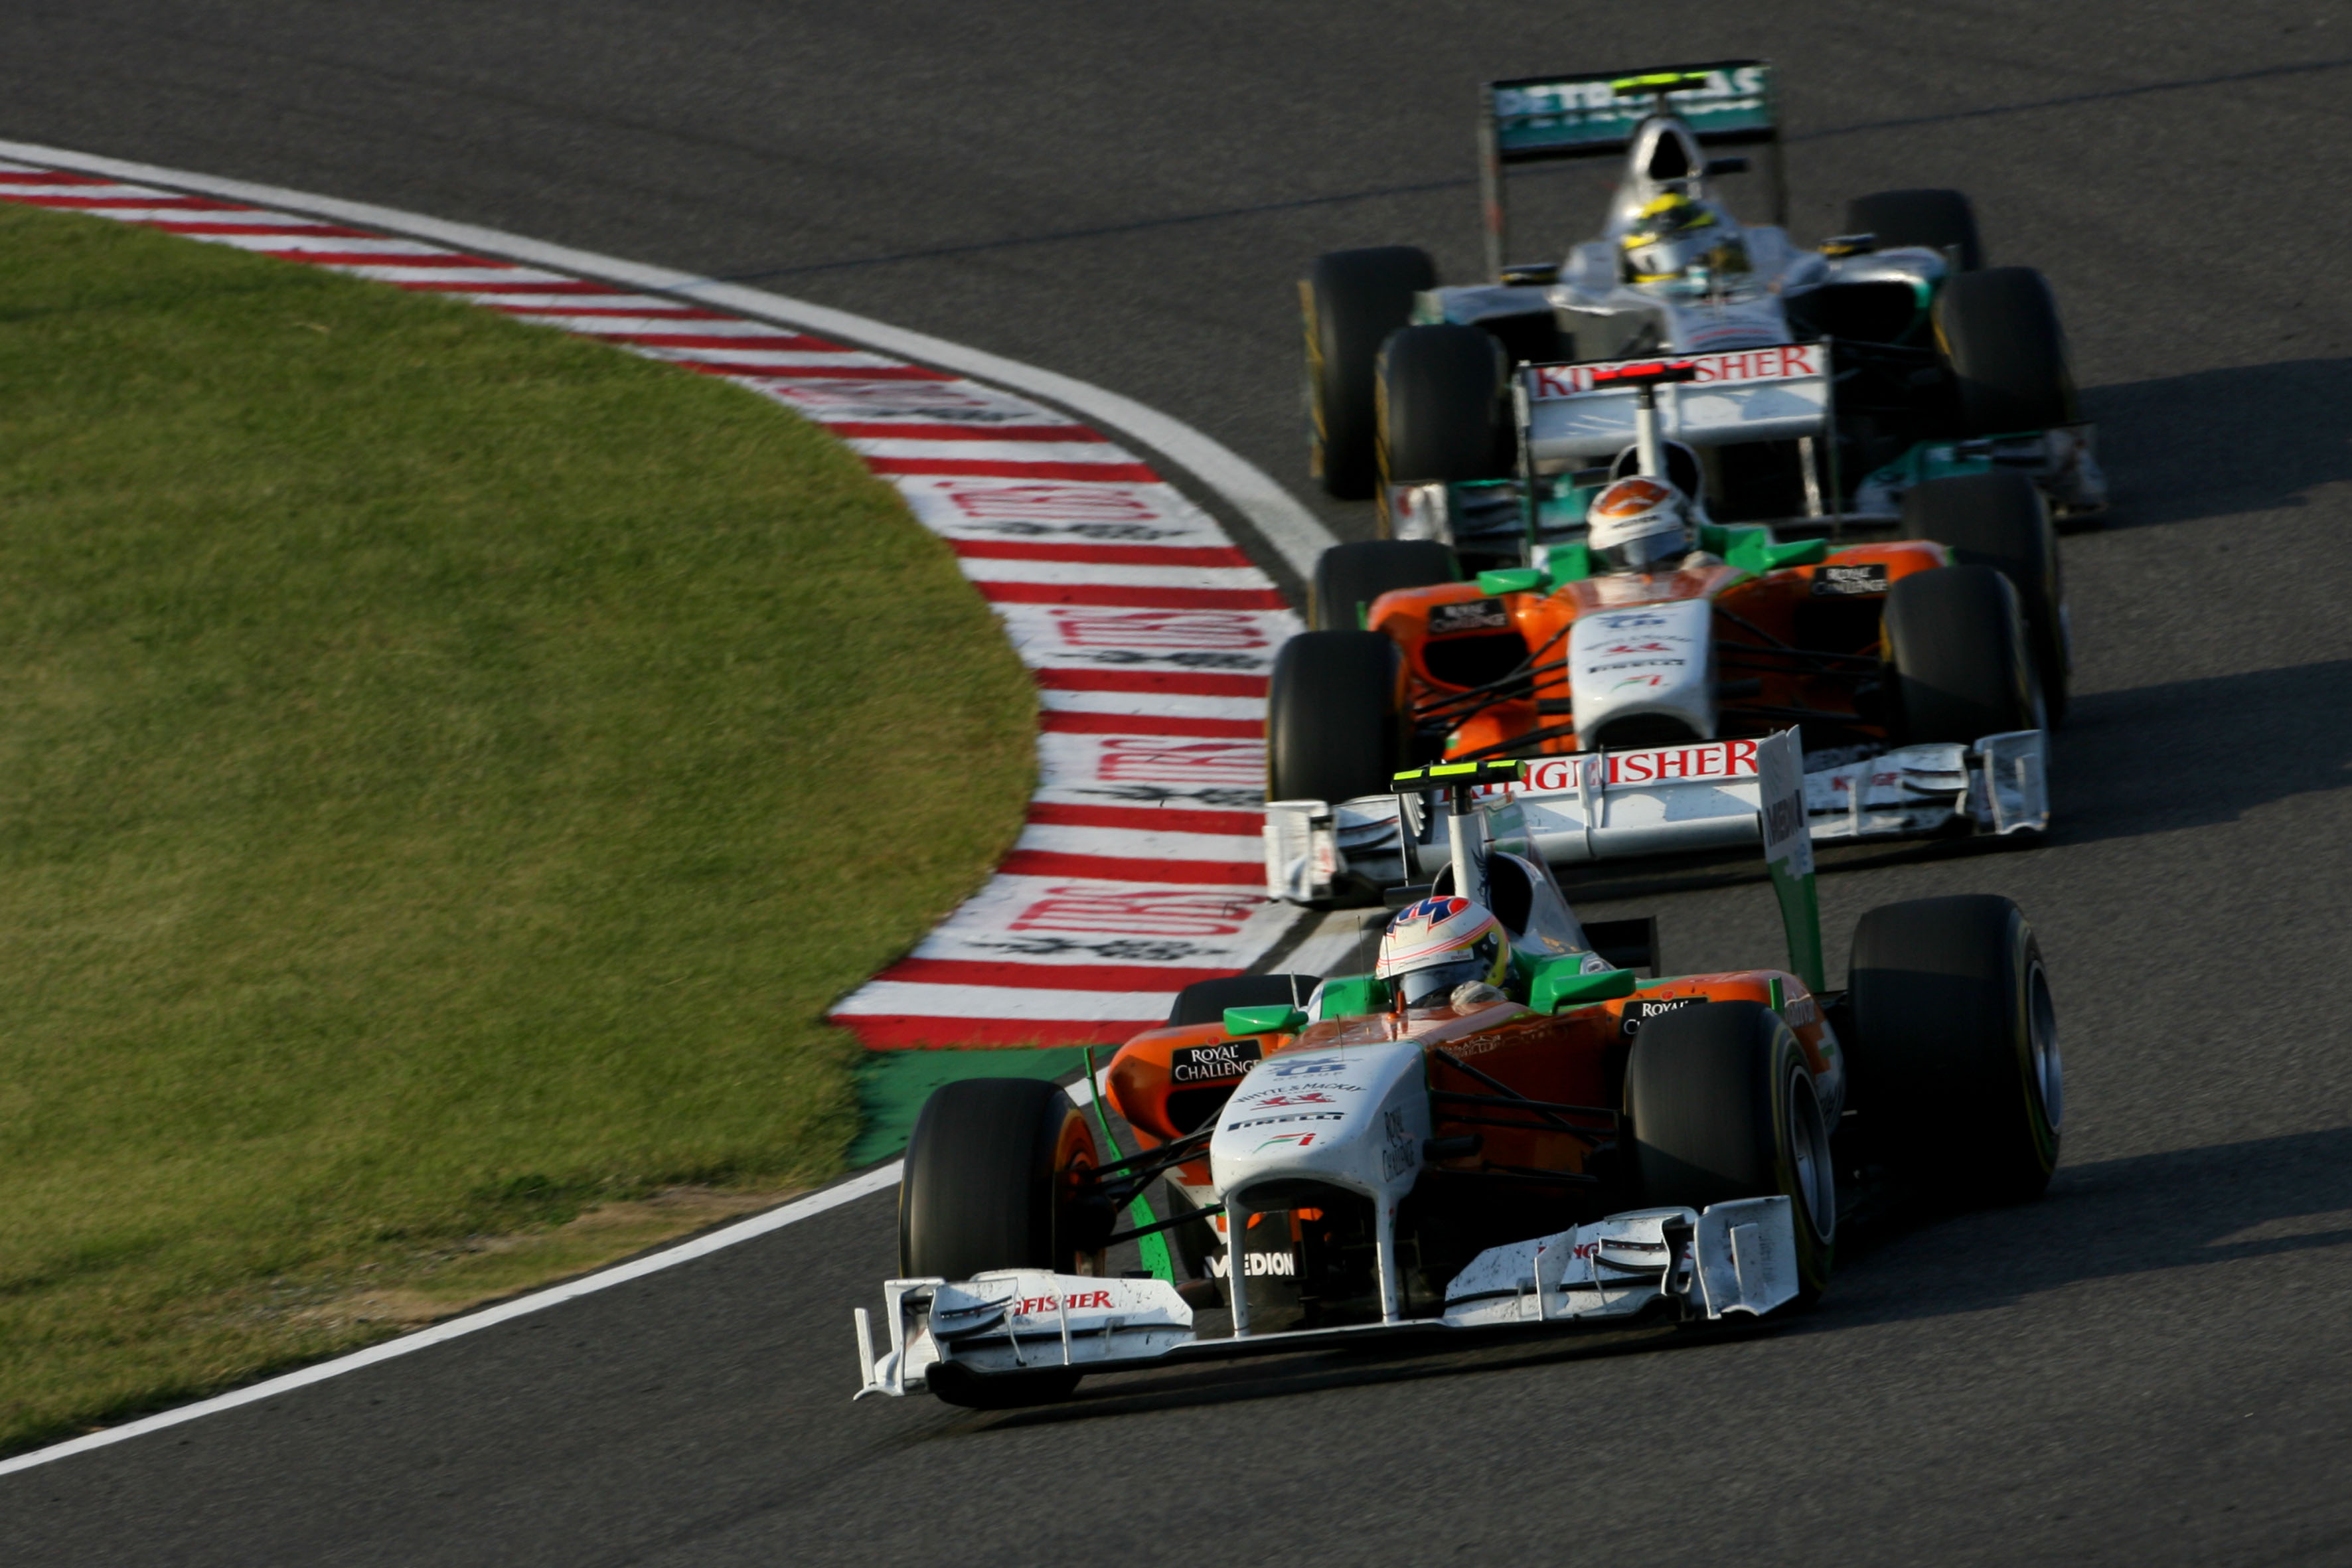 Belangrijkste race van het jaar voor Force India